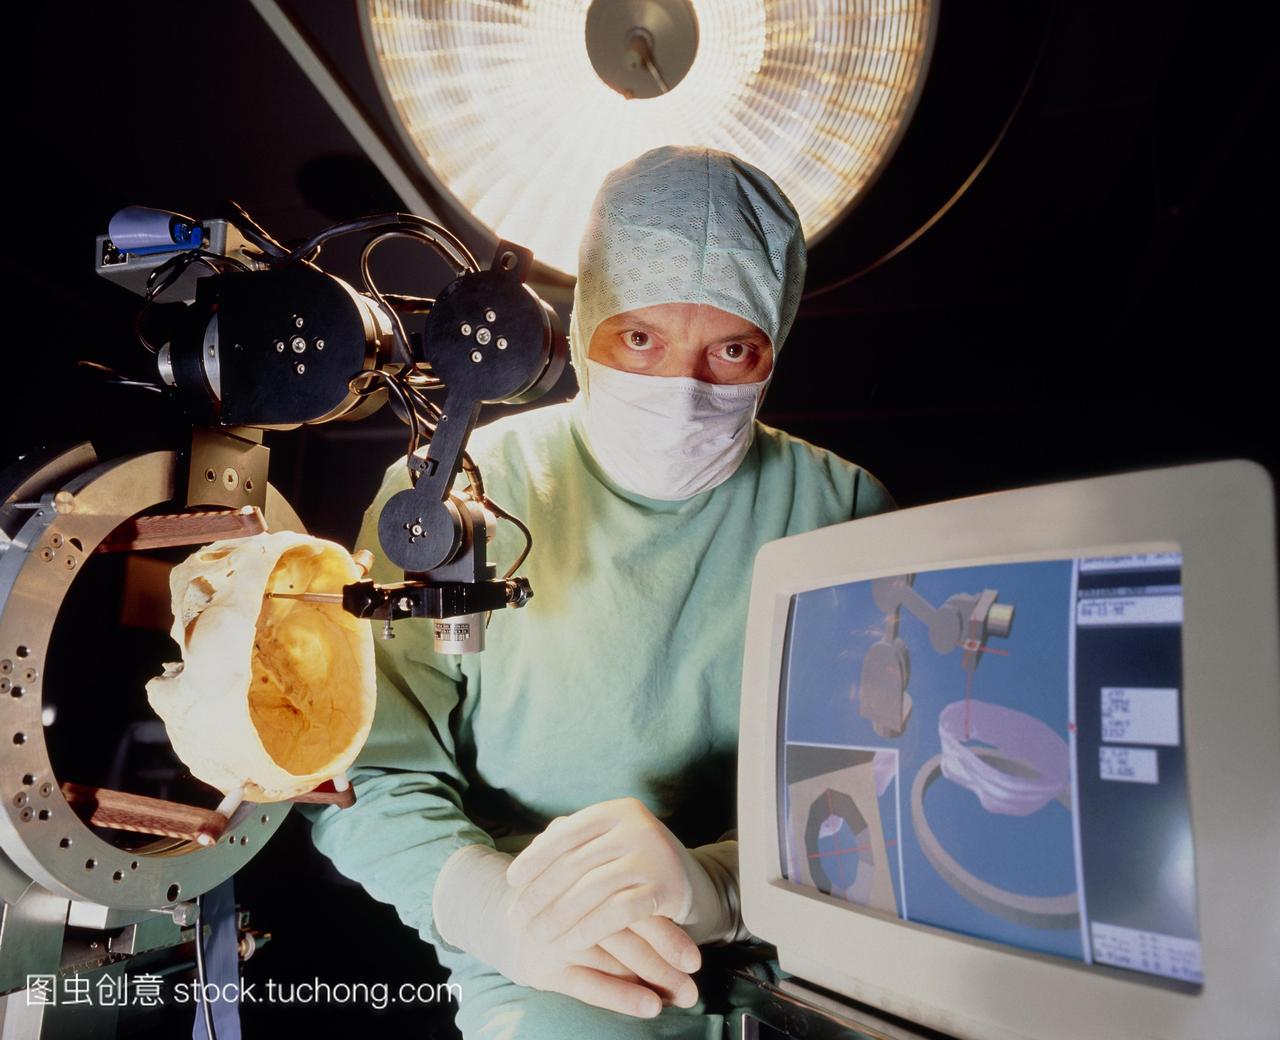 外科医生用计算机控制的机器人手臂用于脑部手